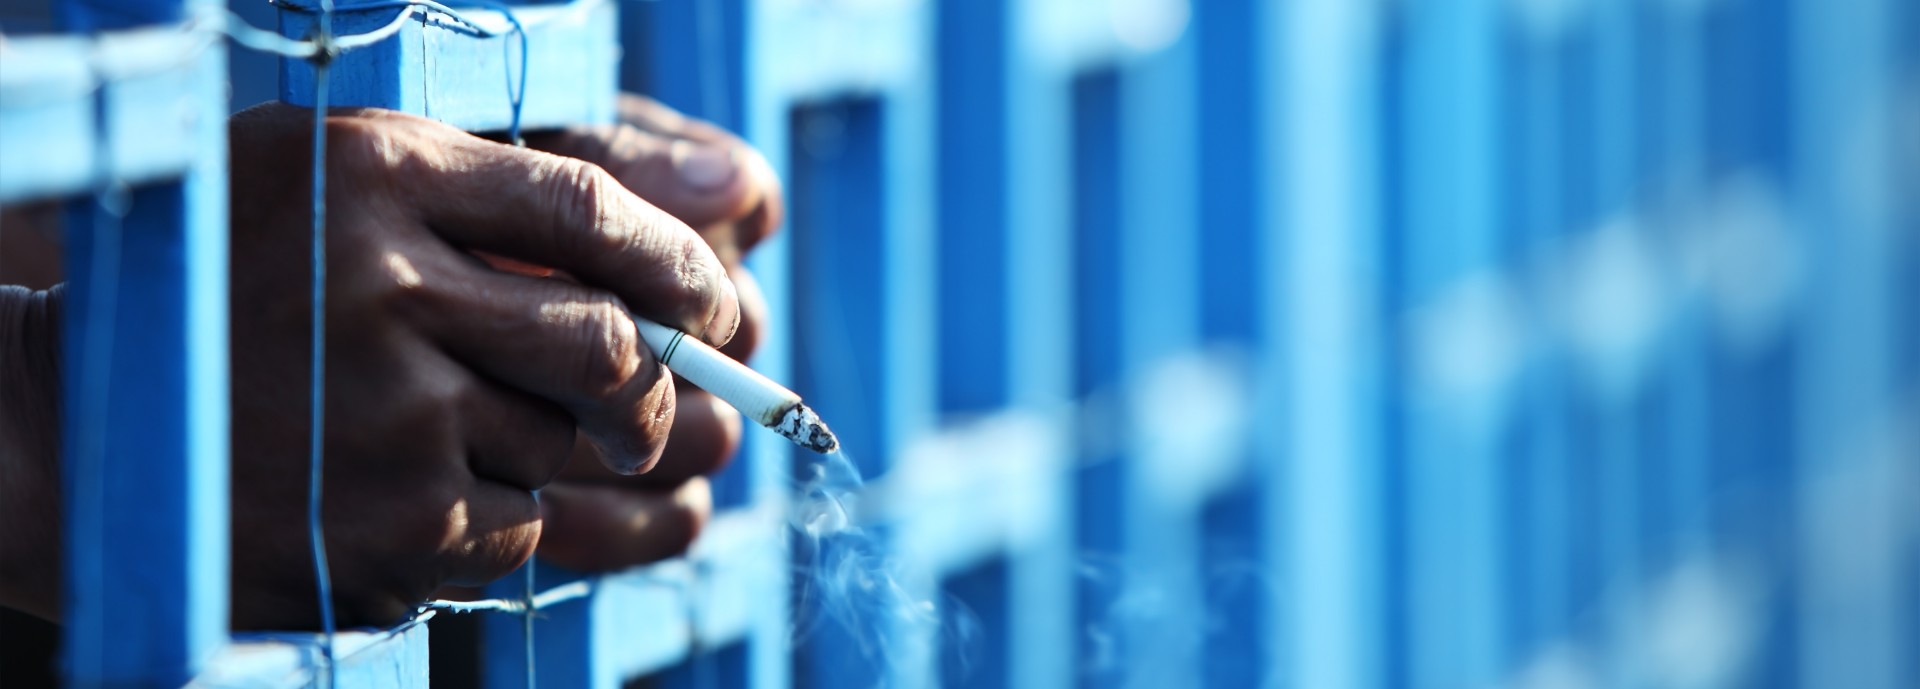 smoking in jail